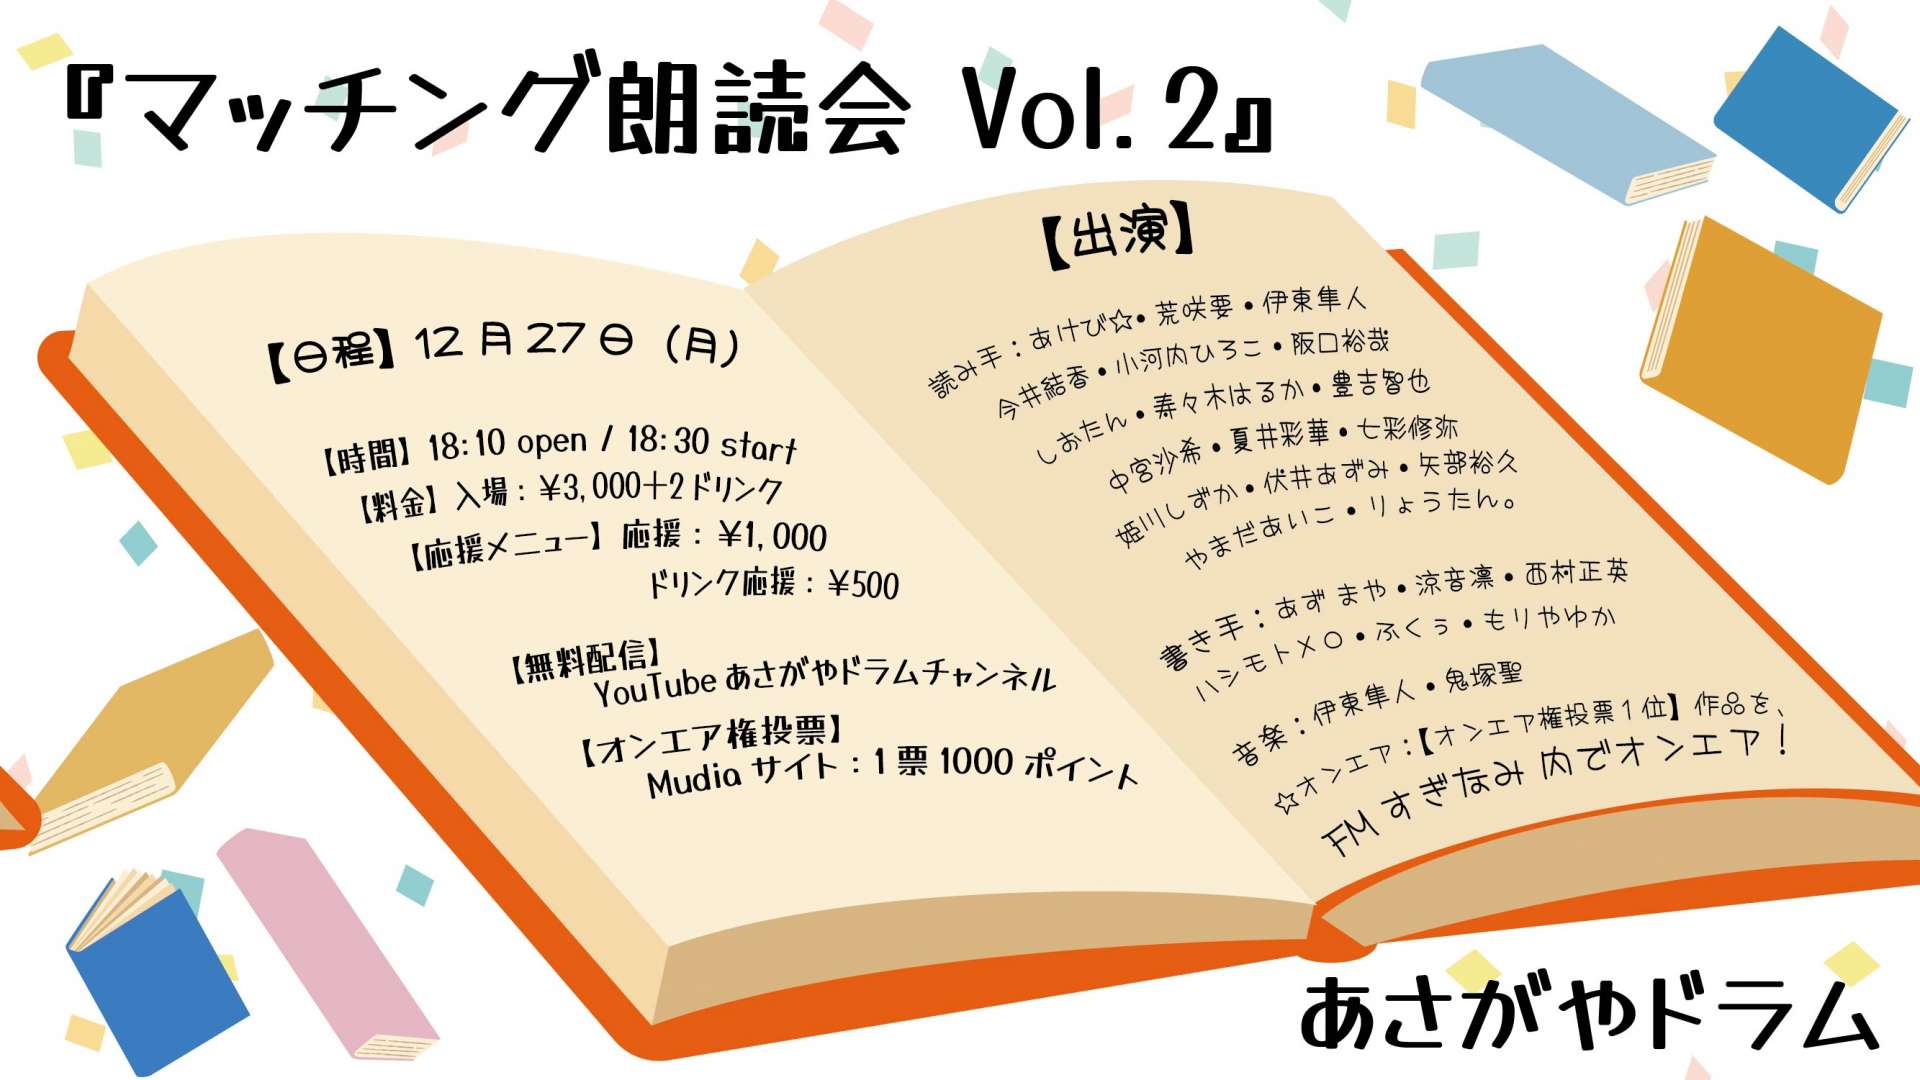 マッチング朗読会 Vol.2